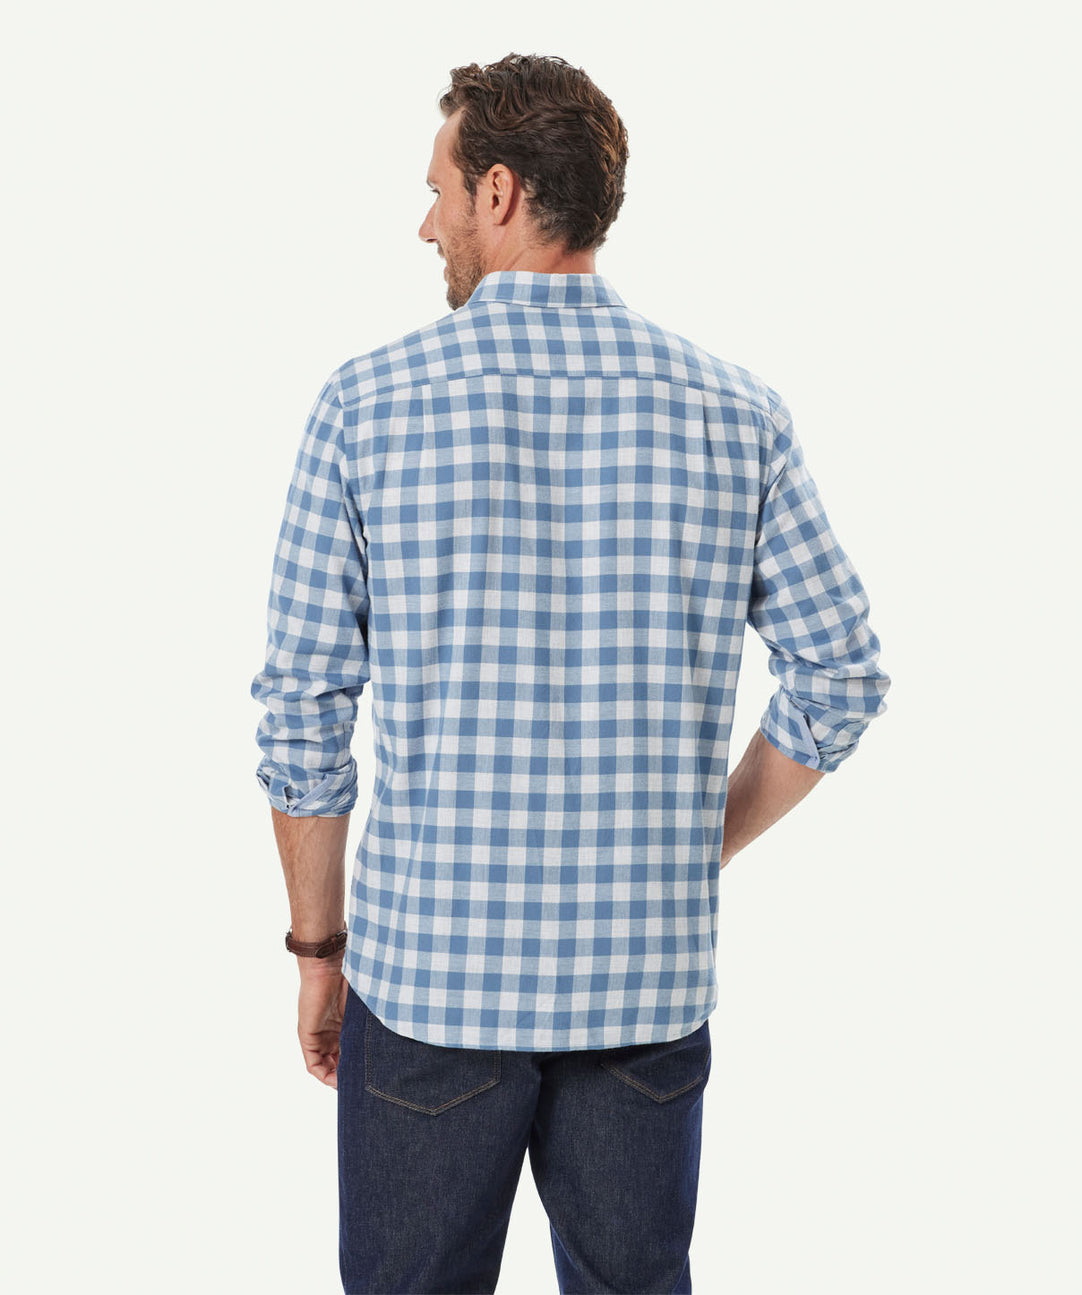 When to Tuck in a Shirt? - Men's Shirts - GAZMAN